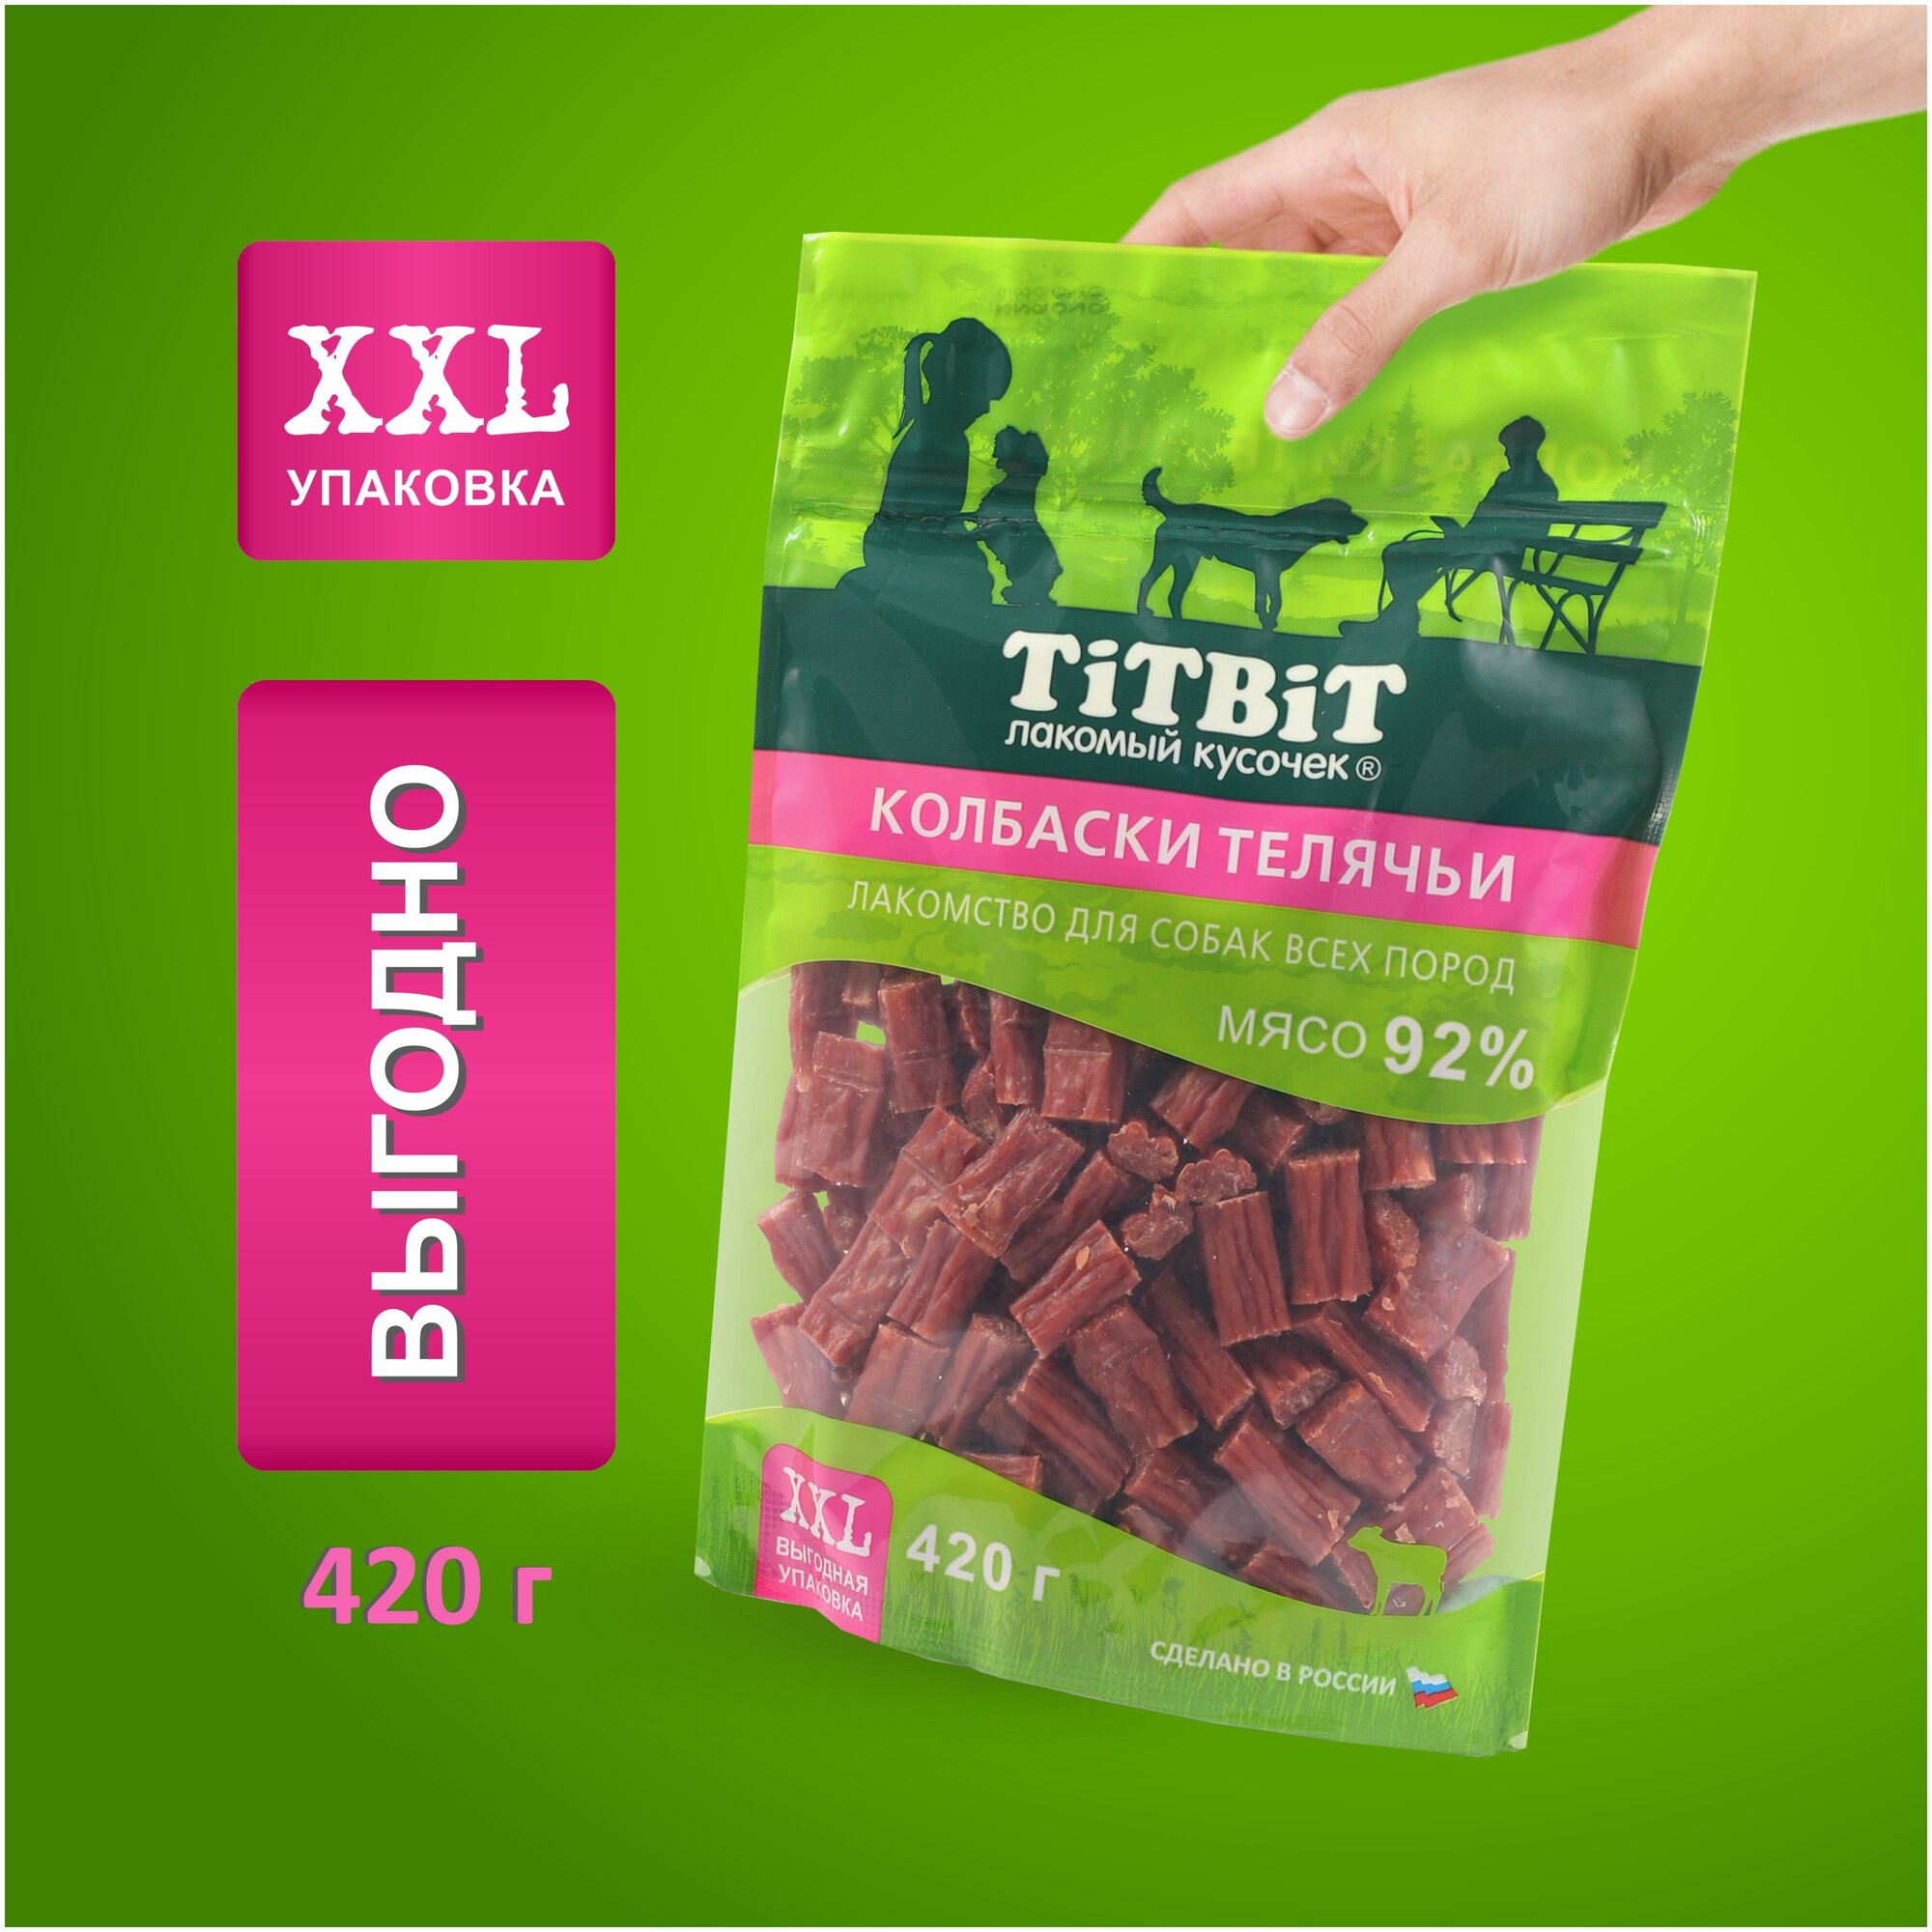 Лакомство для собак всех пород TiTBiT Колбаски телячьи - XXL 420 г